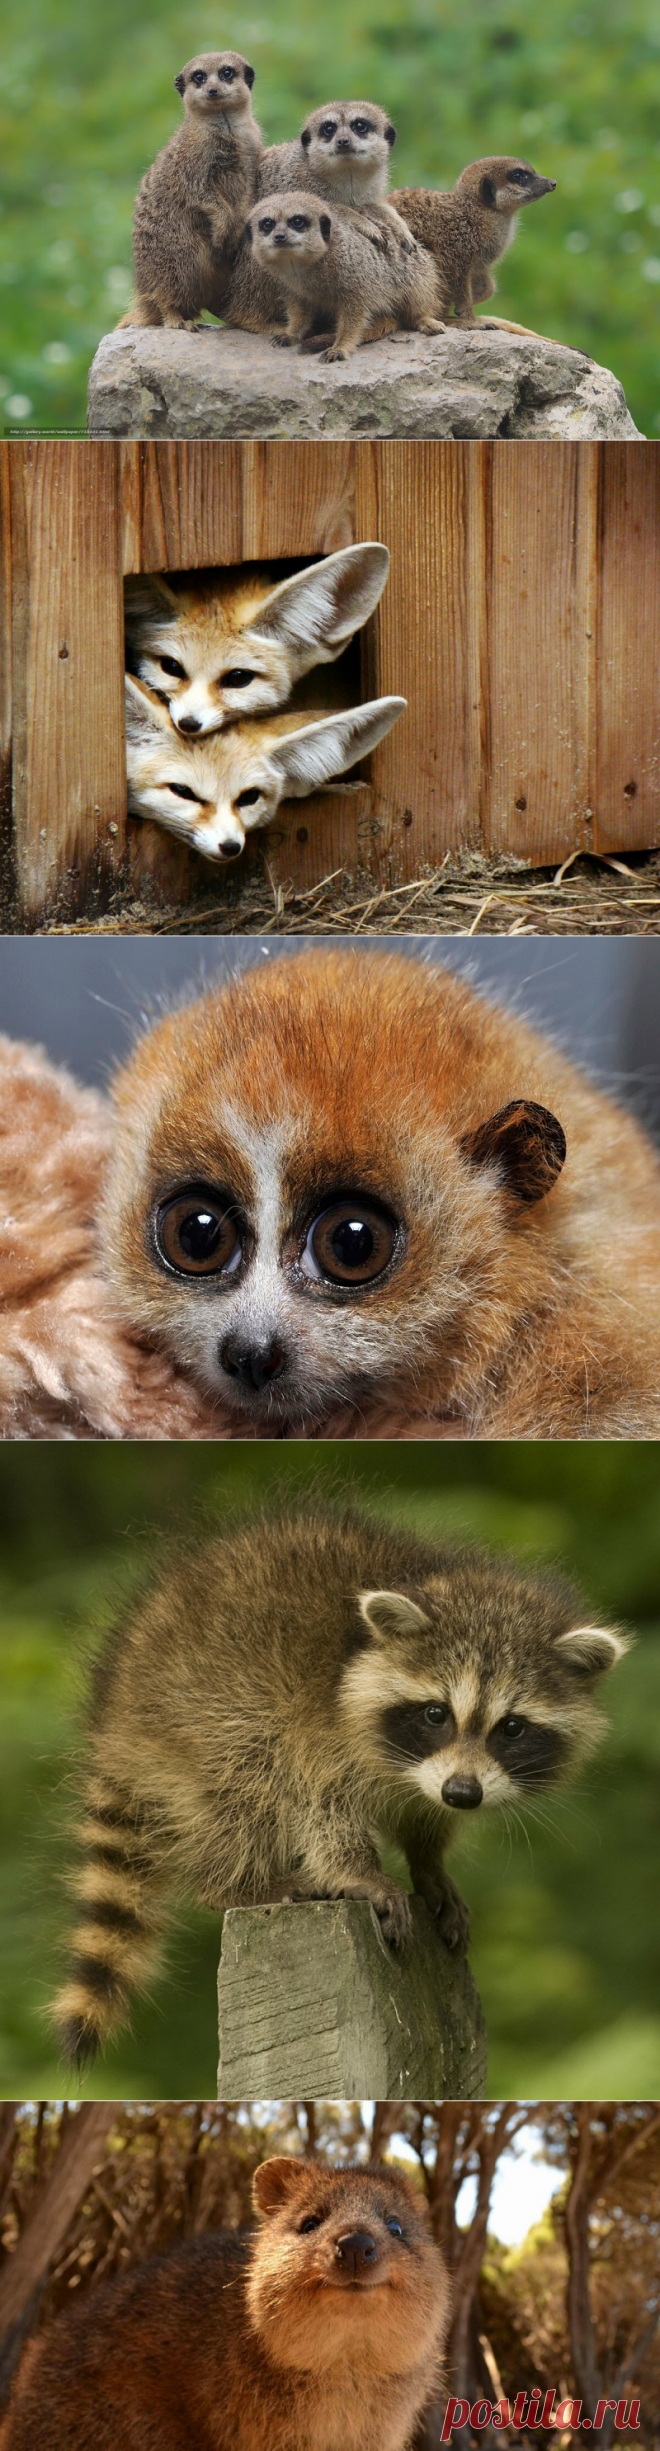 ТОП-10 самых милых животных на планете | Мир Вокруг Нас | Яндекс Дзен